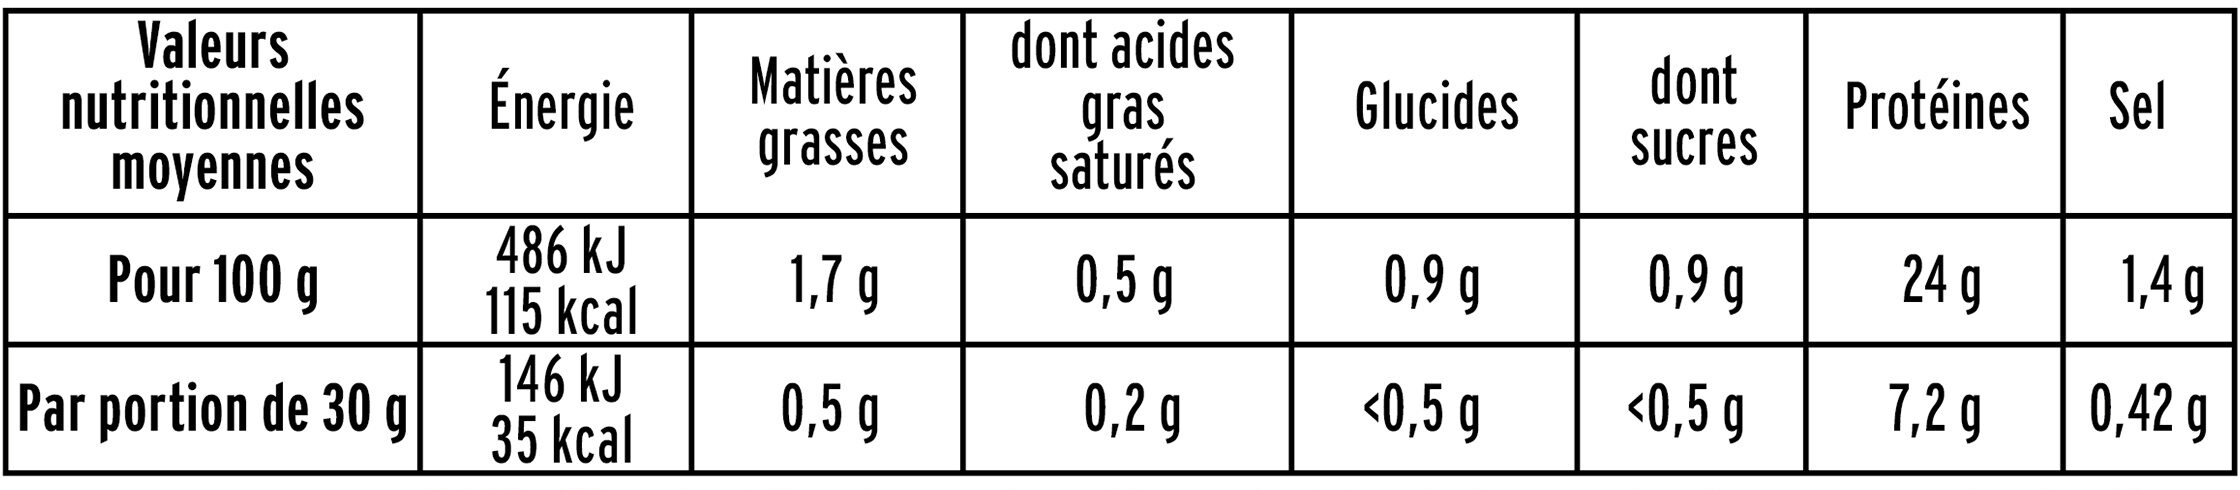 Filet de Poulet - 25% de Sel* - Información nutricional - fr